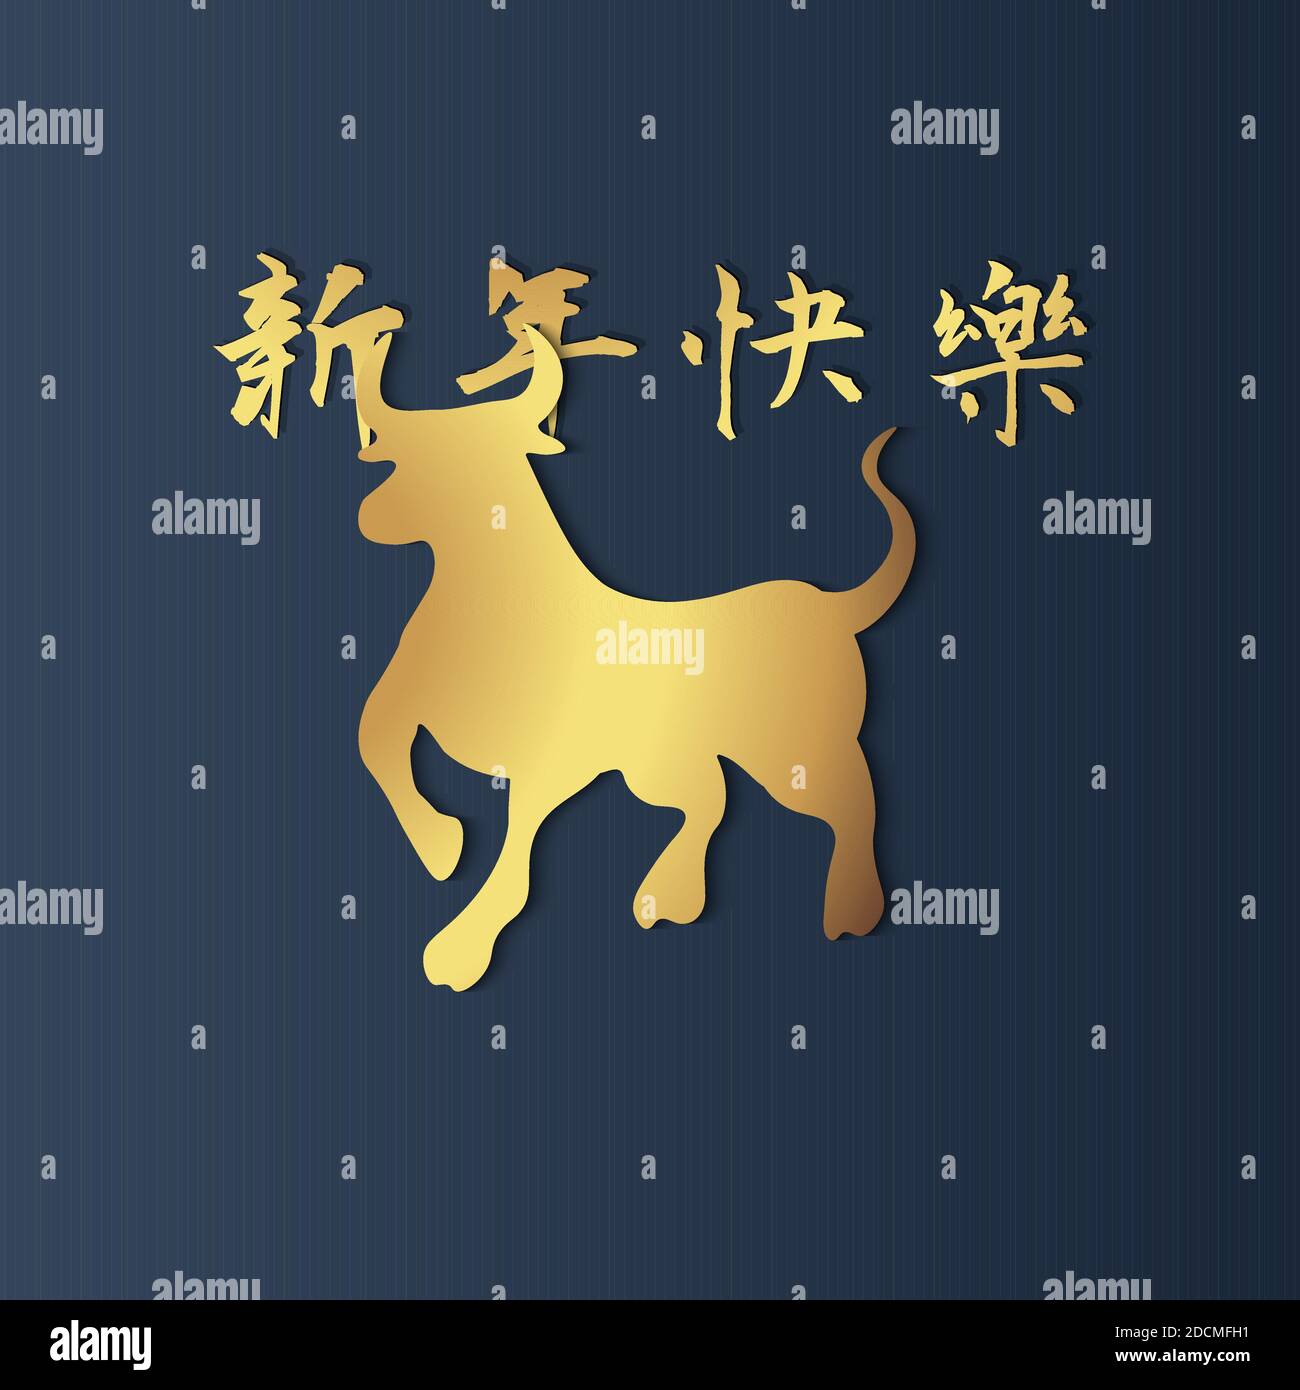 2021 Happy Chinese New Year vector. golden ox avec un fond haut de gamme de fantaisie. Traduction chinoise : bonne année Illustration de Vecteur